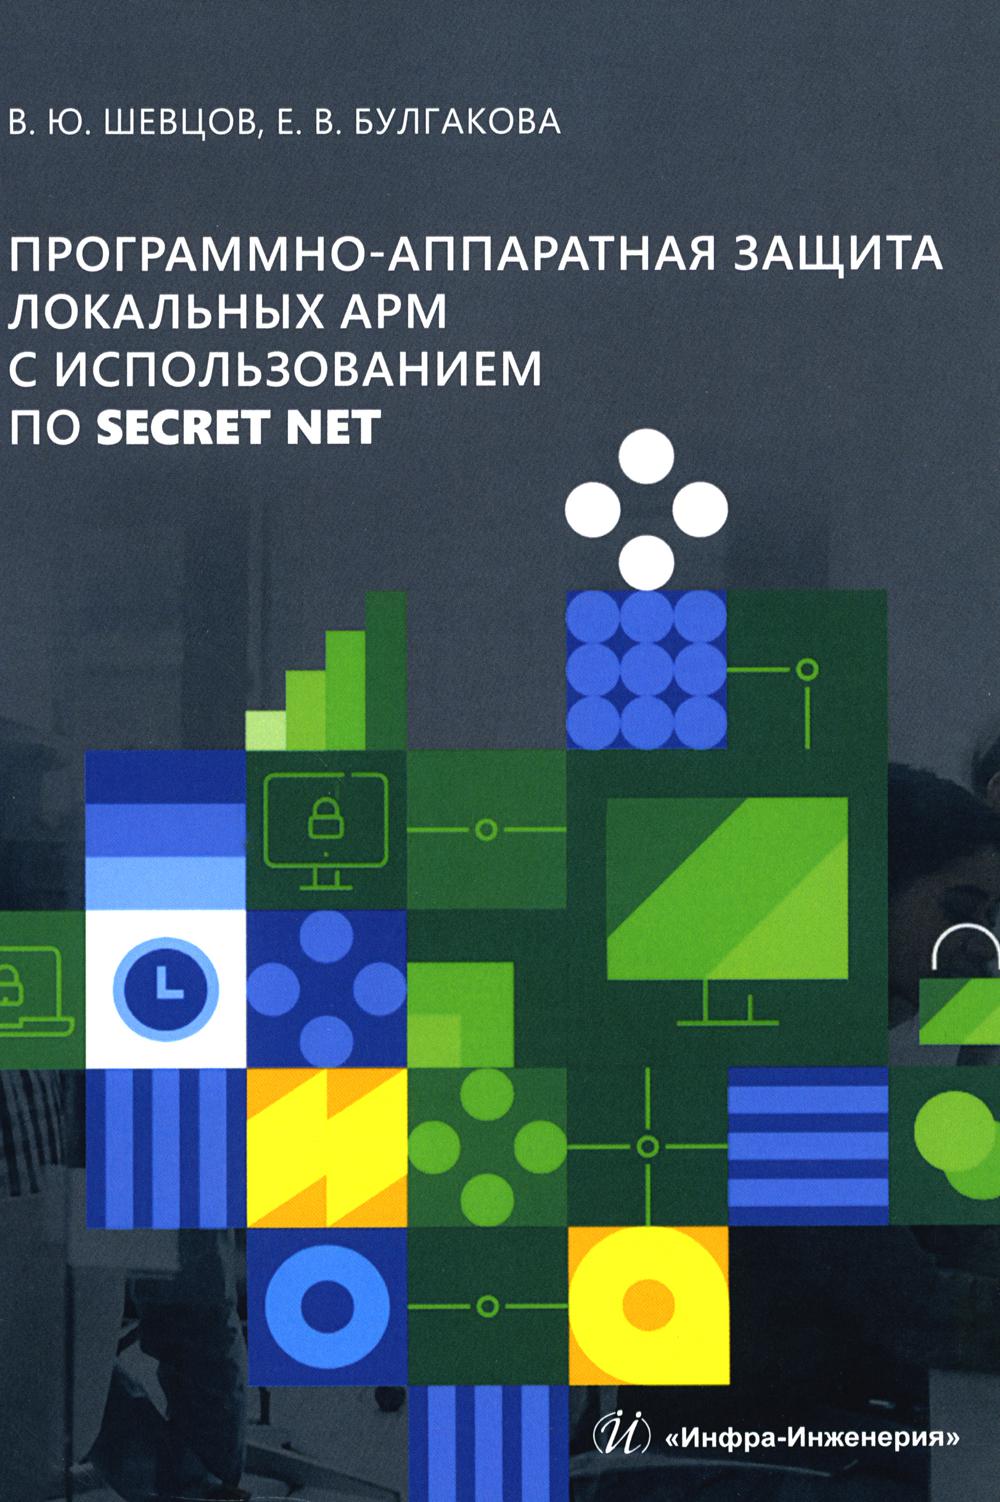 -       Secret Net: - 